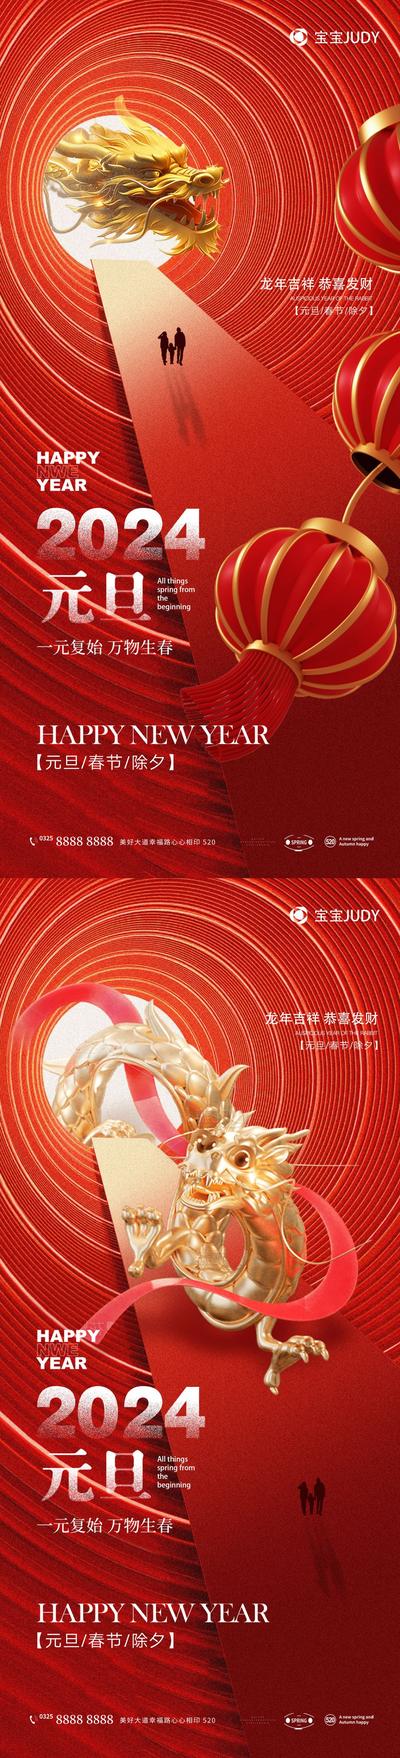 南门网 广告 海报 节日 元旦 新年 春节 龙年 2024 系列 大气 品质